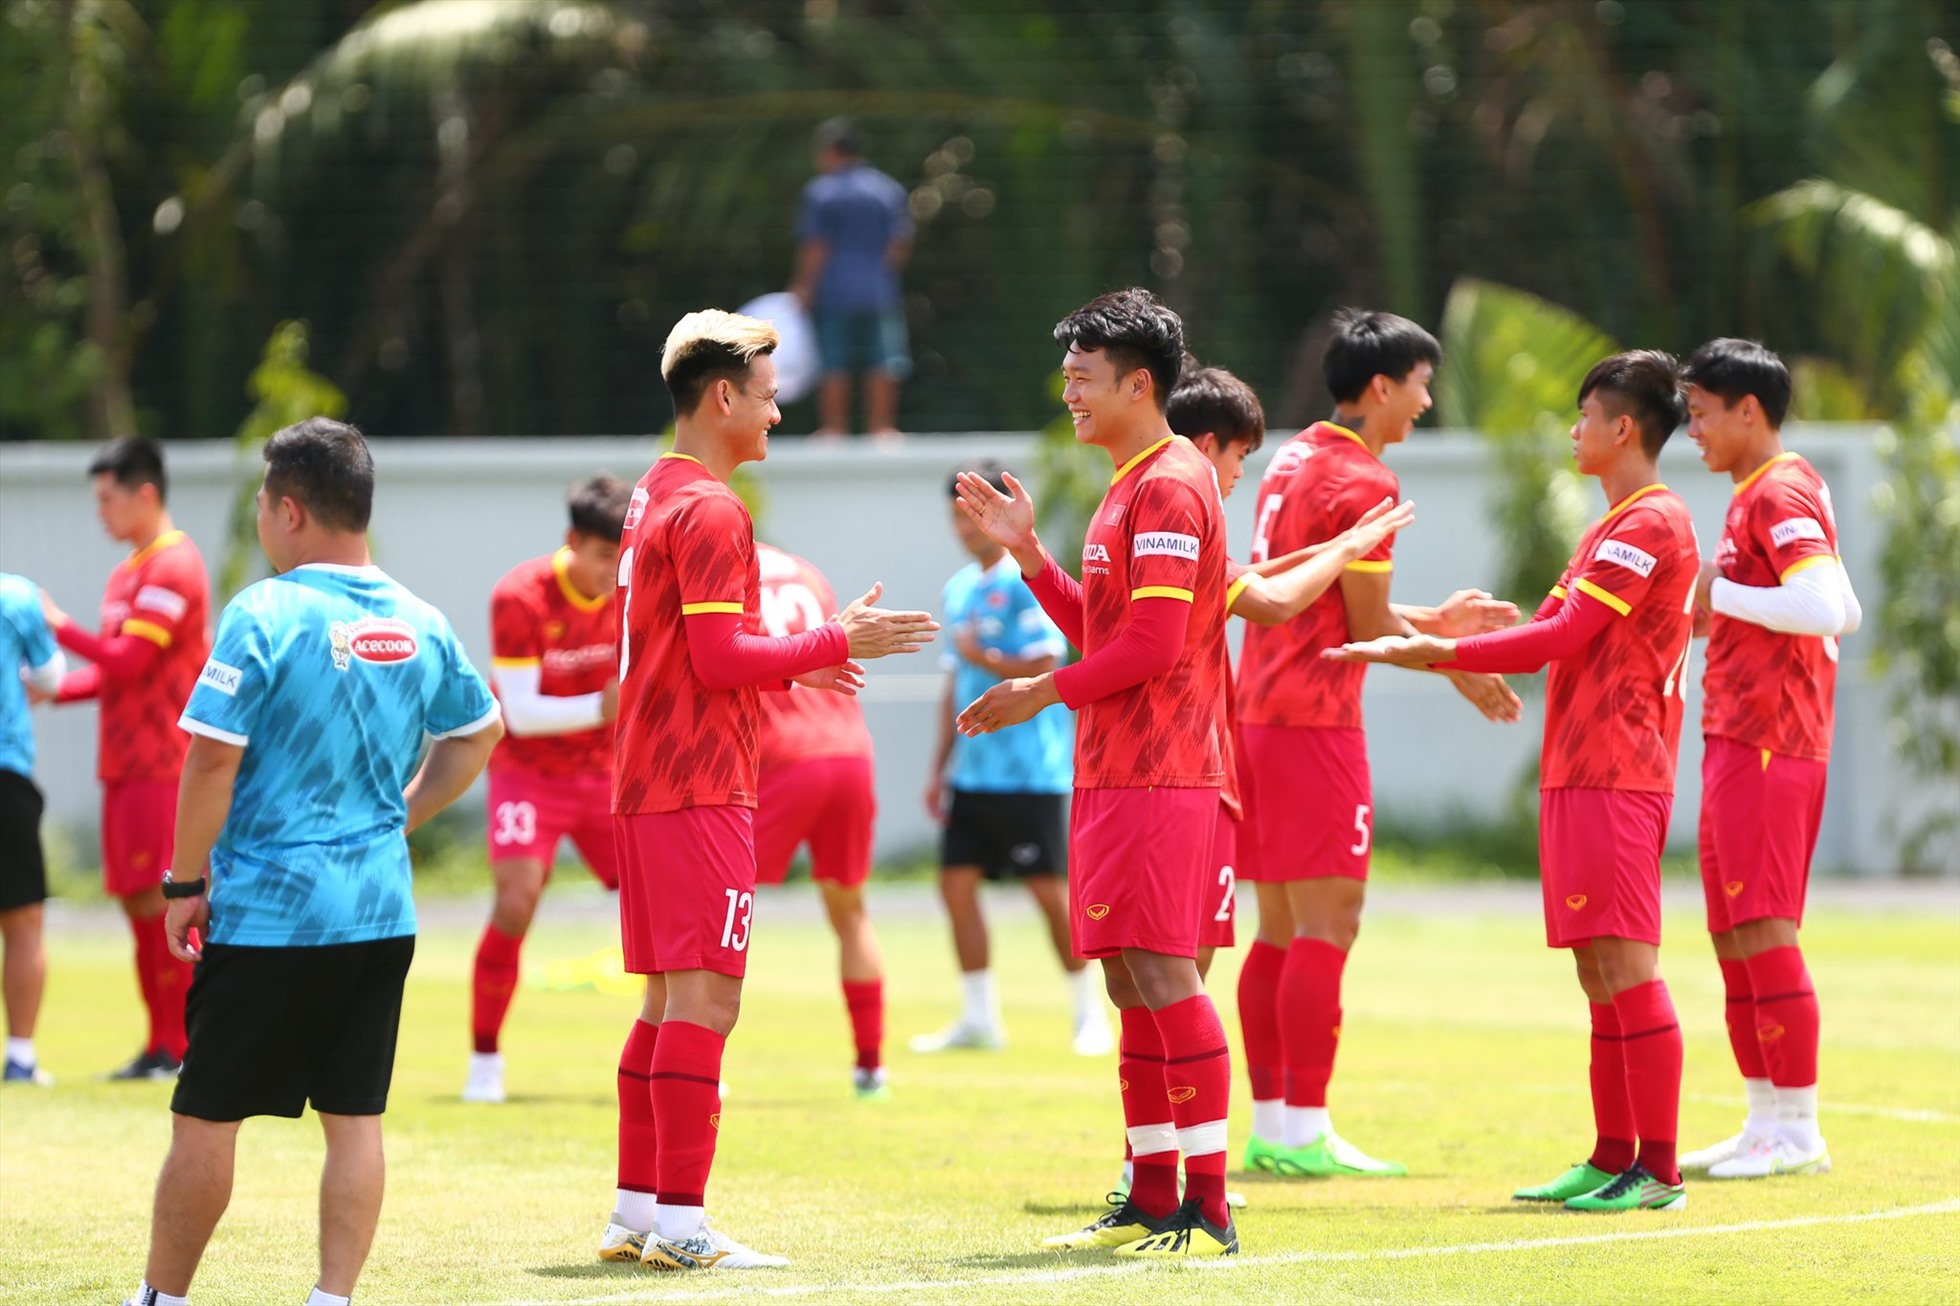 HLV Park Hang-seo và trợ lý Anh Đức di chuyển sang Thái Lan để xem trận mở màn Cúp Nhà vua 2022 giữa đội chủ nhà và Malaysia.  Được biết, khoảng 11h trưa nay (23/9), chiến lược gia người Hàn Quốc và Anh Đức sẽ có mặt tại TP.HCM để chuẩn bị cho những kế hoạch tiếp theo của đội.